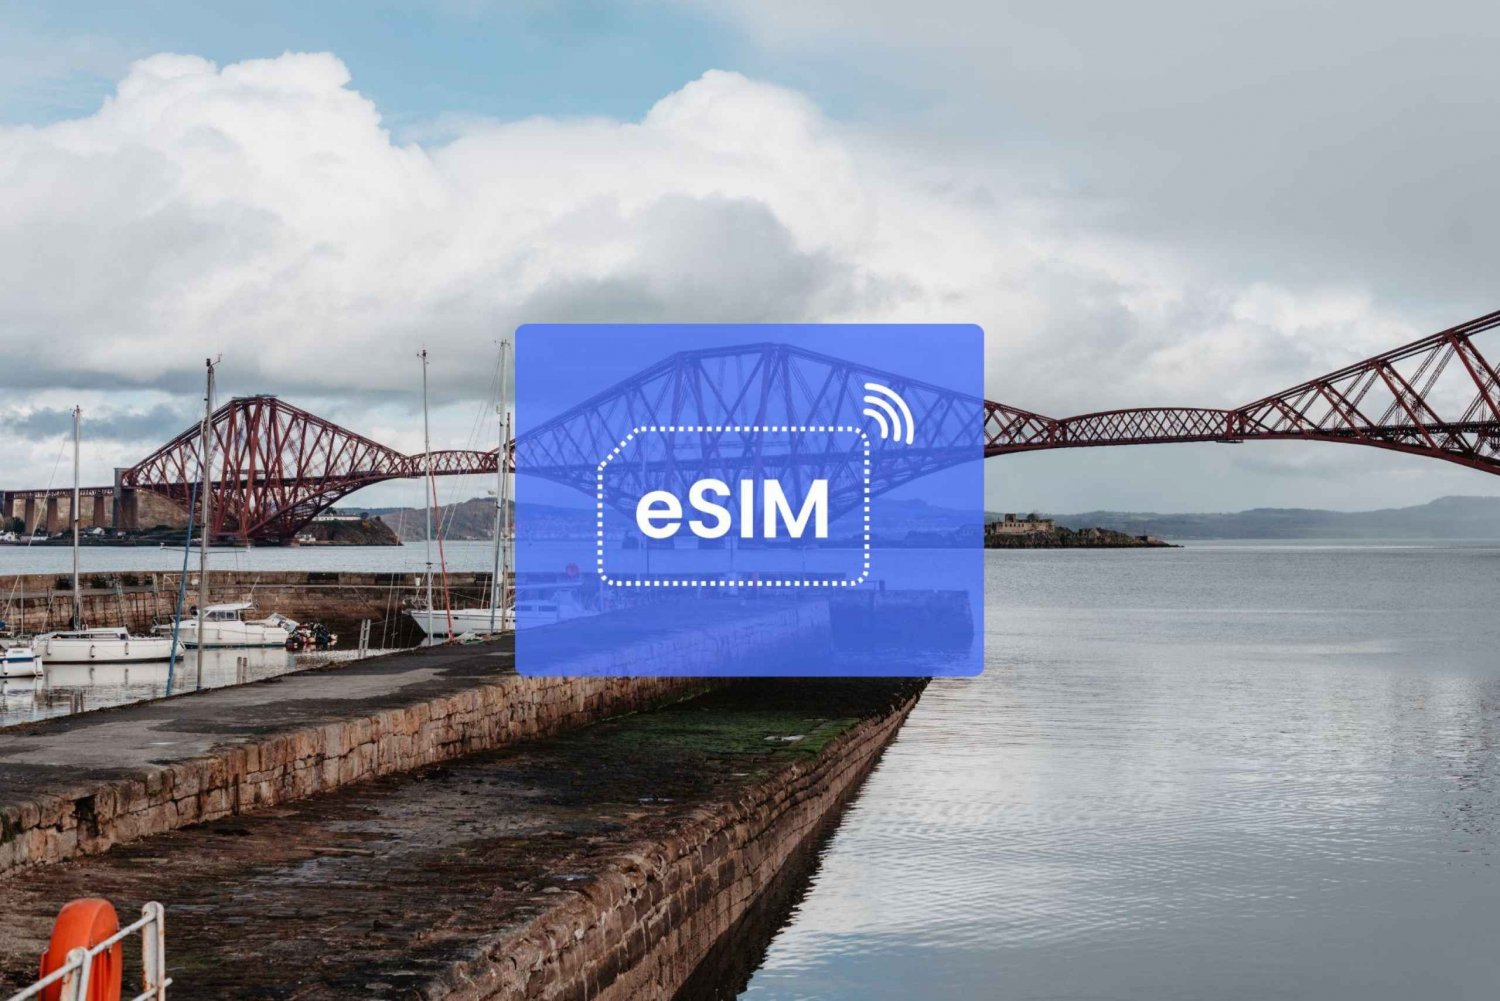 Edimbourg : UK/ Europe eSIM Roaming Mobile Data Plan